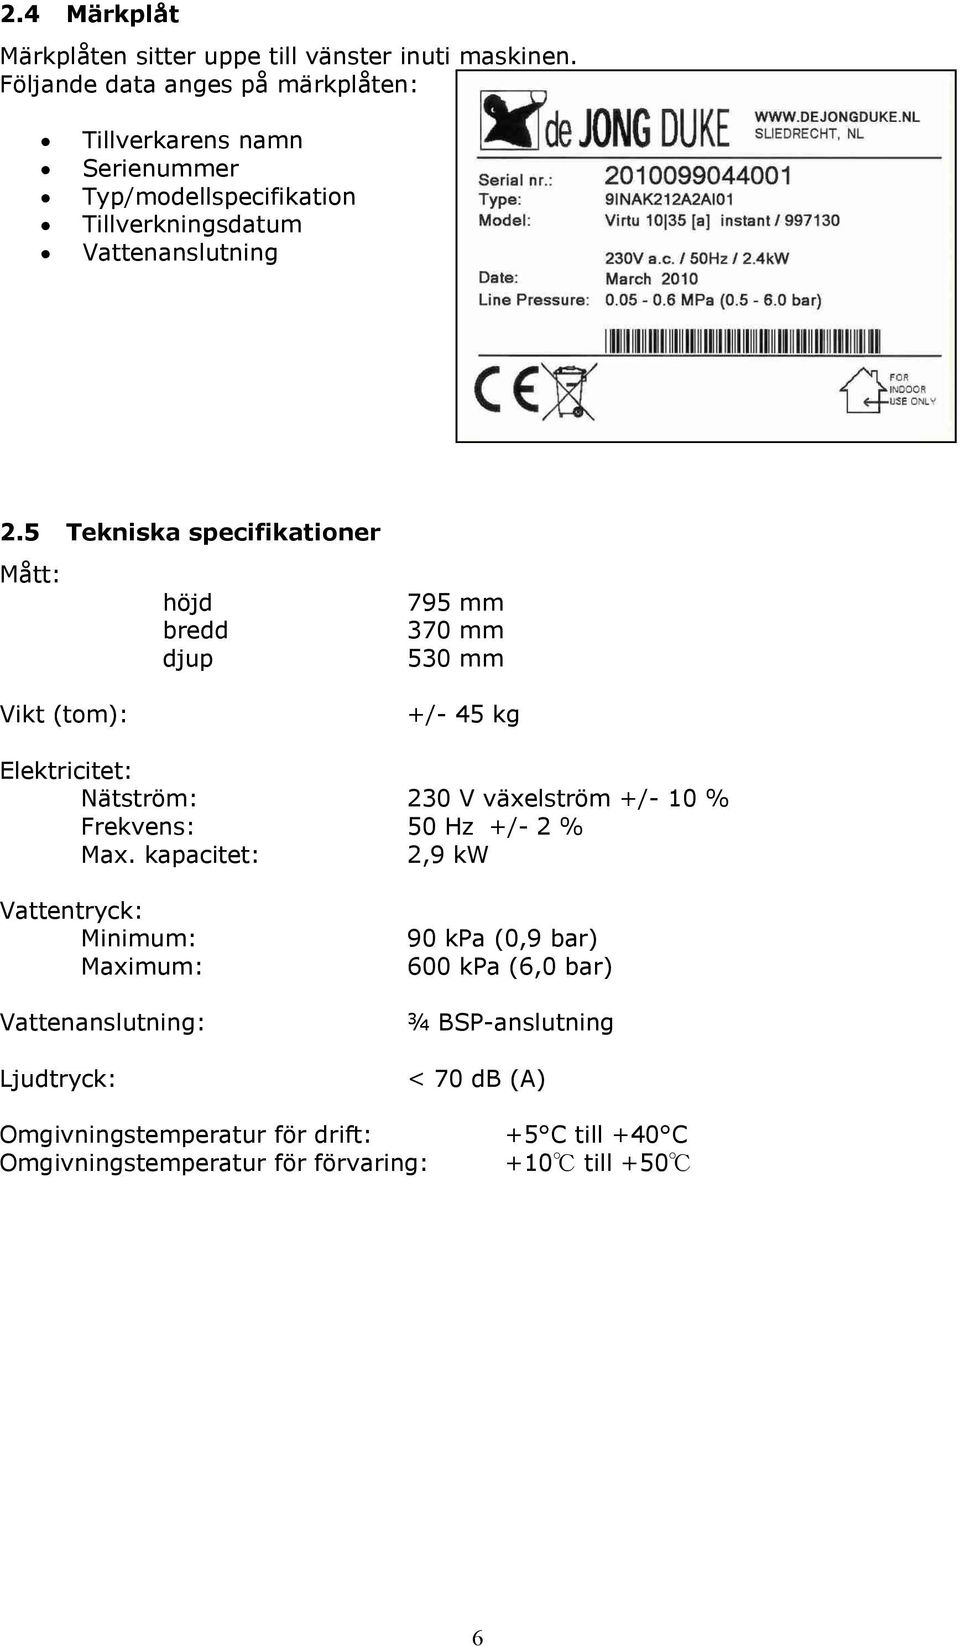 5 Tekniska specifikationer Mått: Vikt (tom): höjd bredd djup 795 mm 370 mm 530 mm +/- 45 kg Elektricitet: Nätström: 230 V växelström +/- 10 %